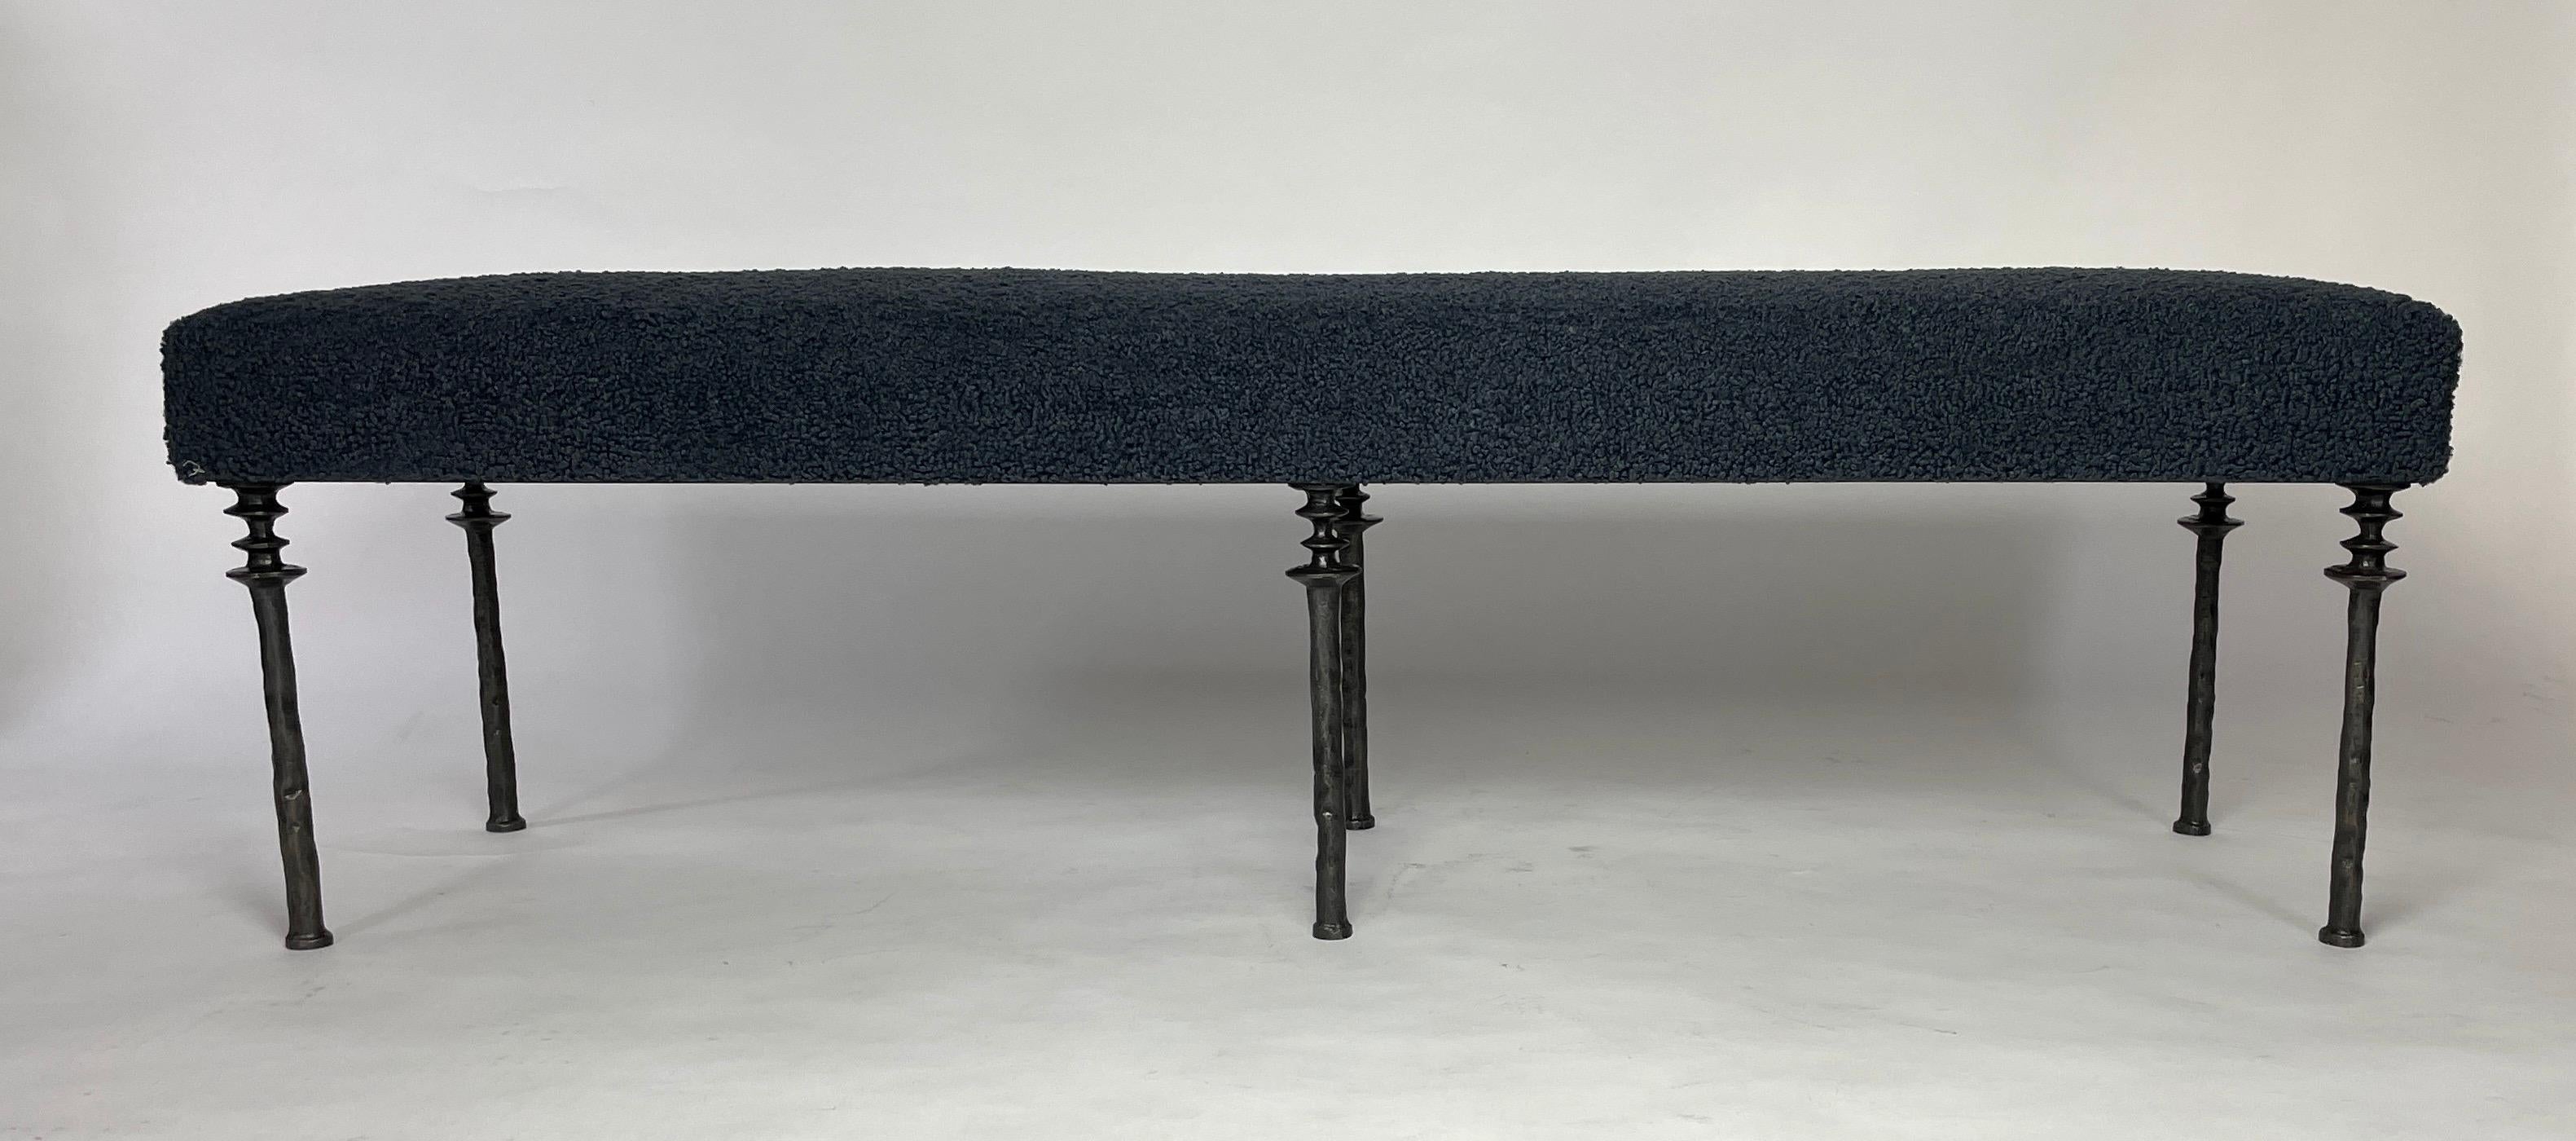 Diese von Diego Giacometti inspirierte Bank ist ideal für alle, die auf der Suche nach einer einzigartigen Sitzgelegenheit sind. Die aus Bronze gegossenen Beine verleihen ihm einen wahrhaft organischen Touch. Das Kissen ist mit einem